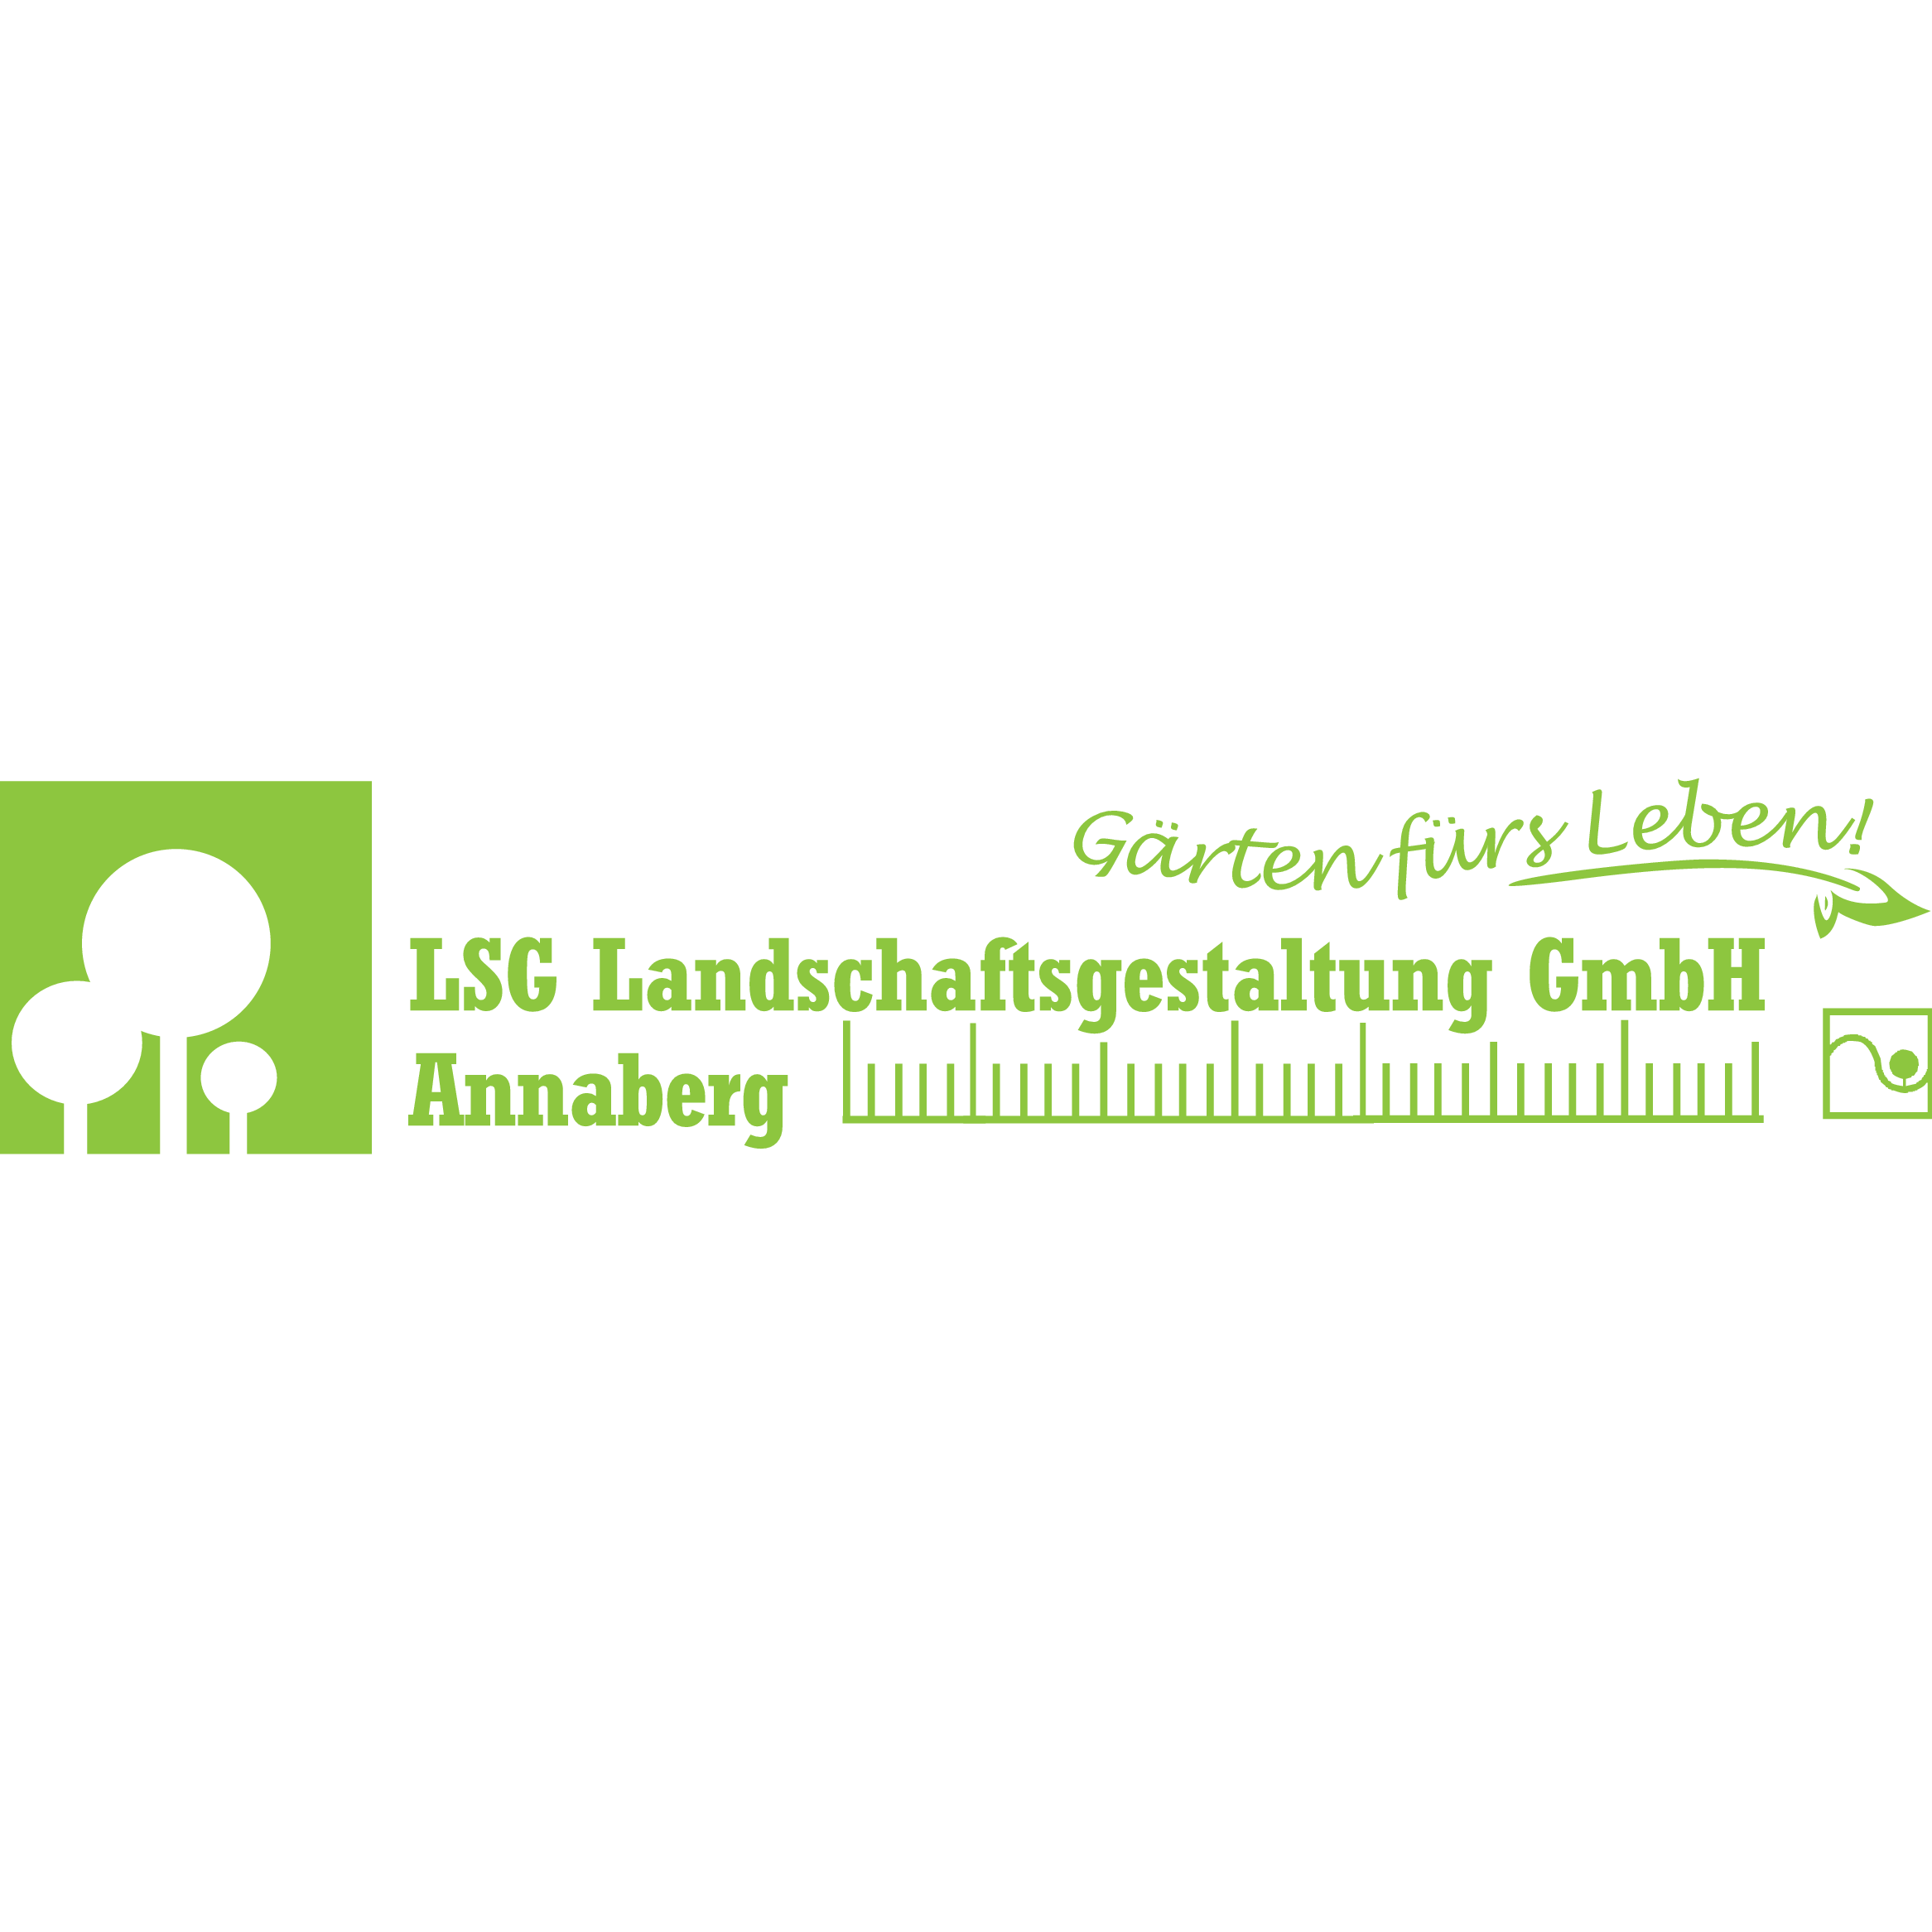 LSG Landschaftsgestaltung GmbH Annaberg